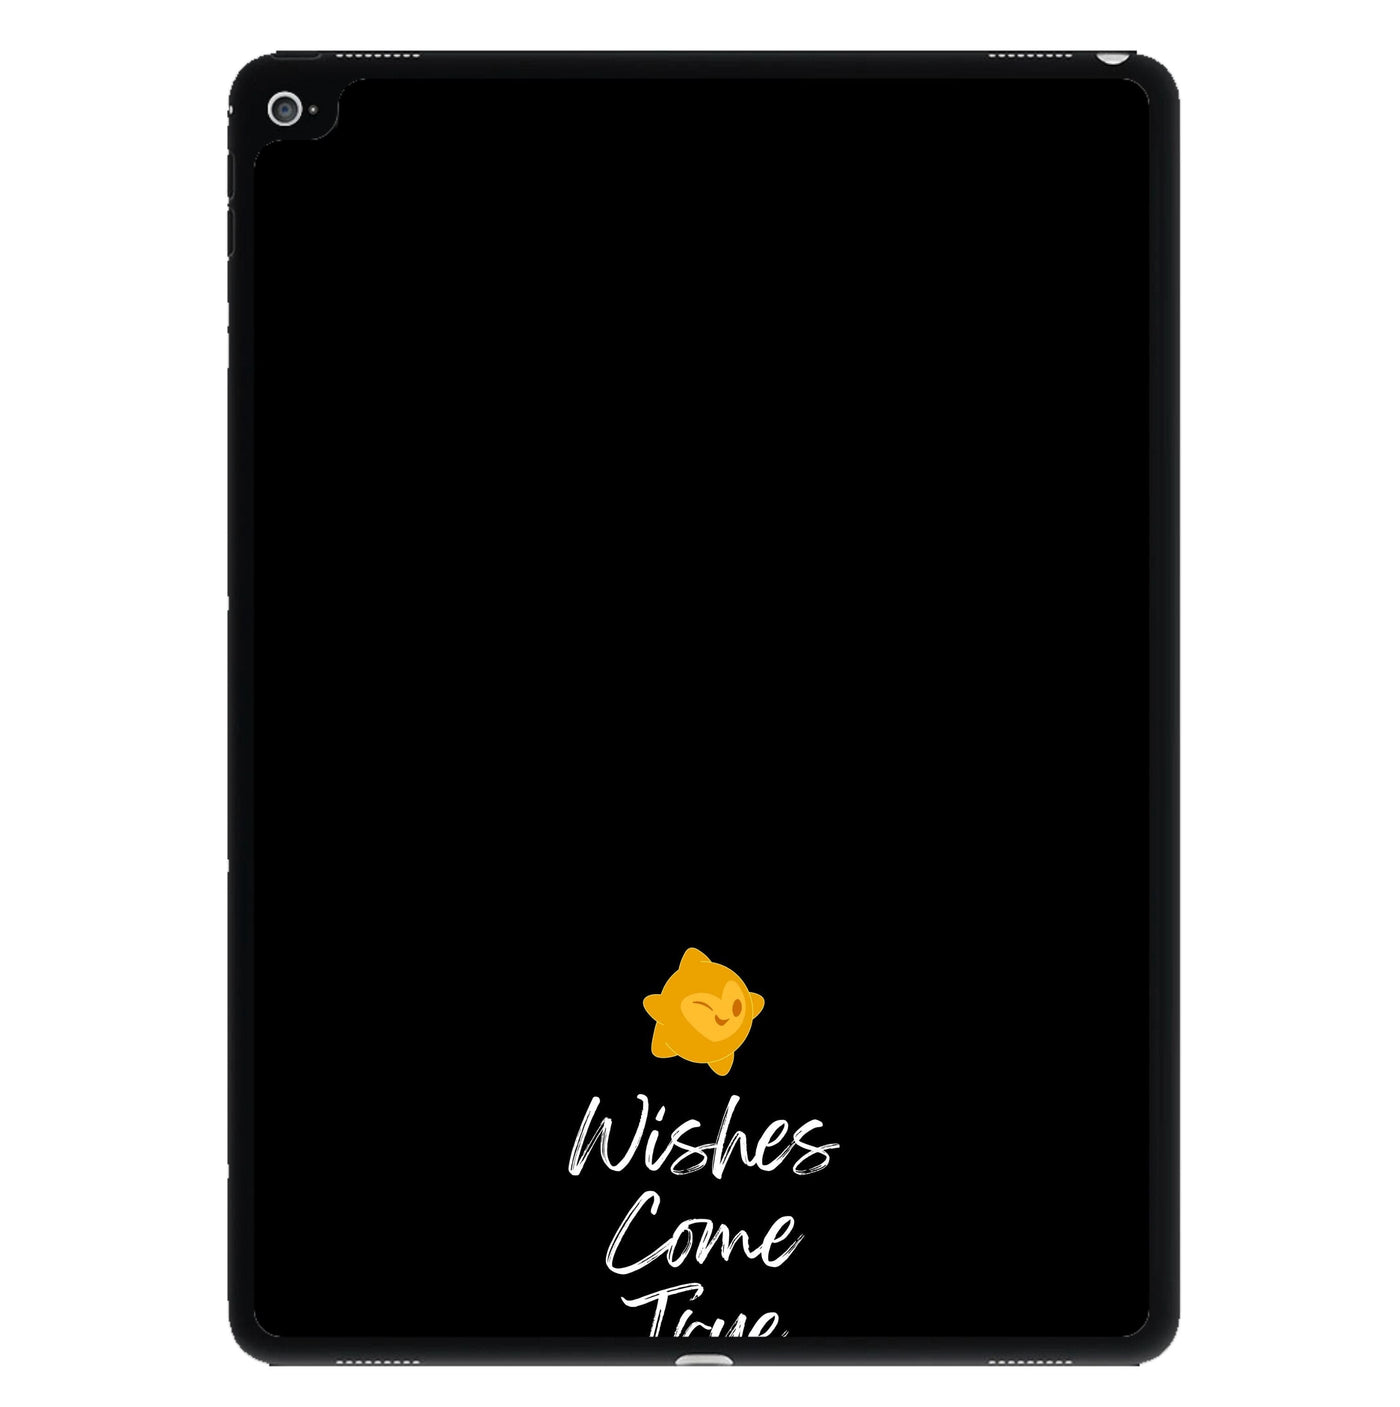 Wishes Come True - Wish iPad Case